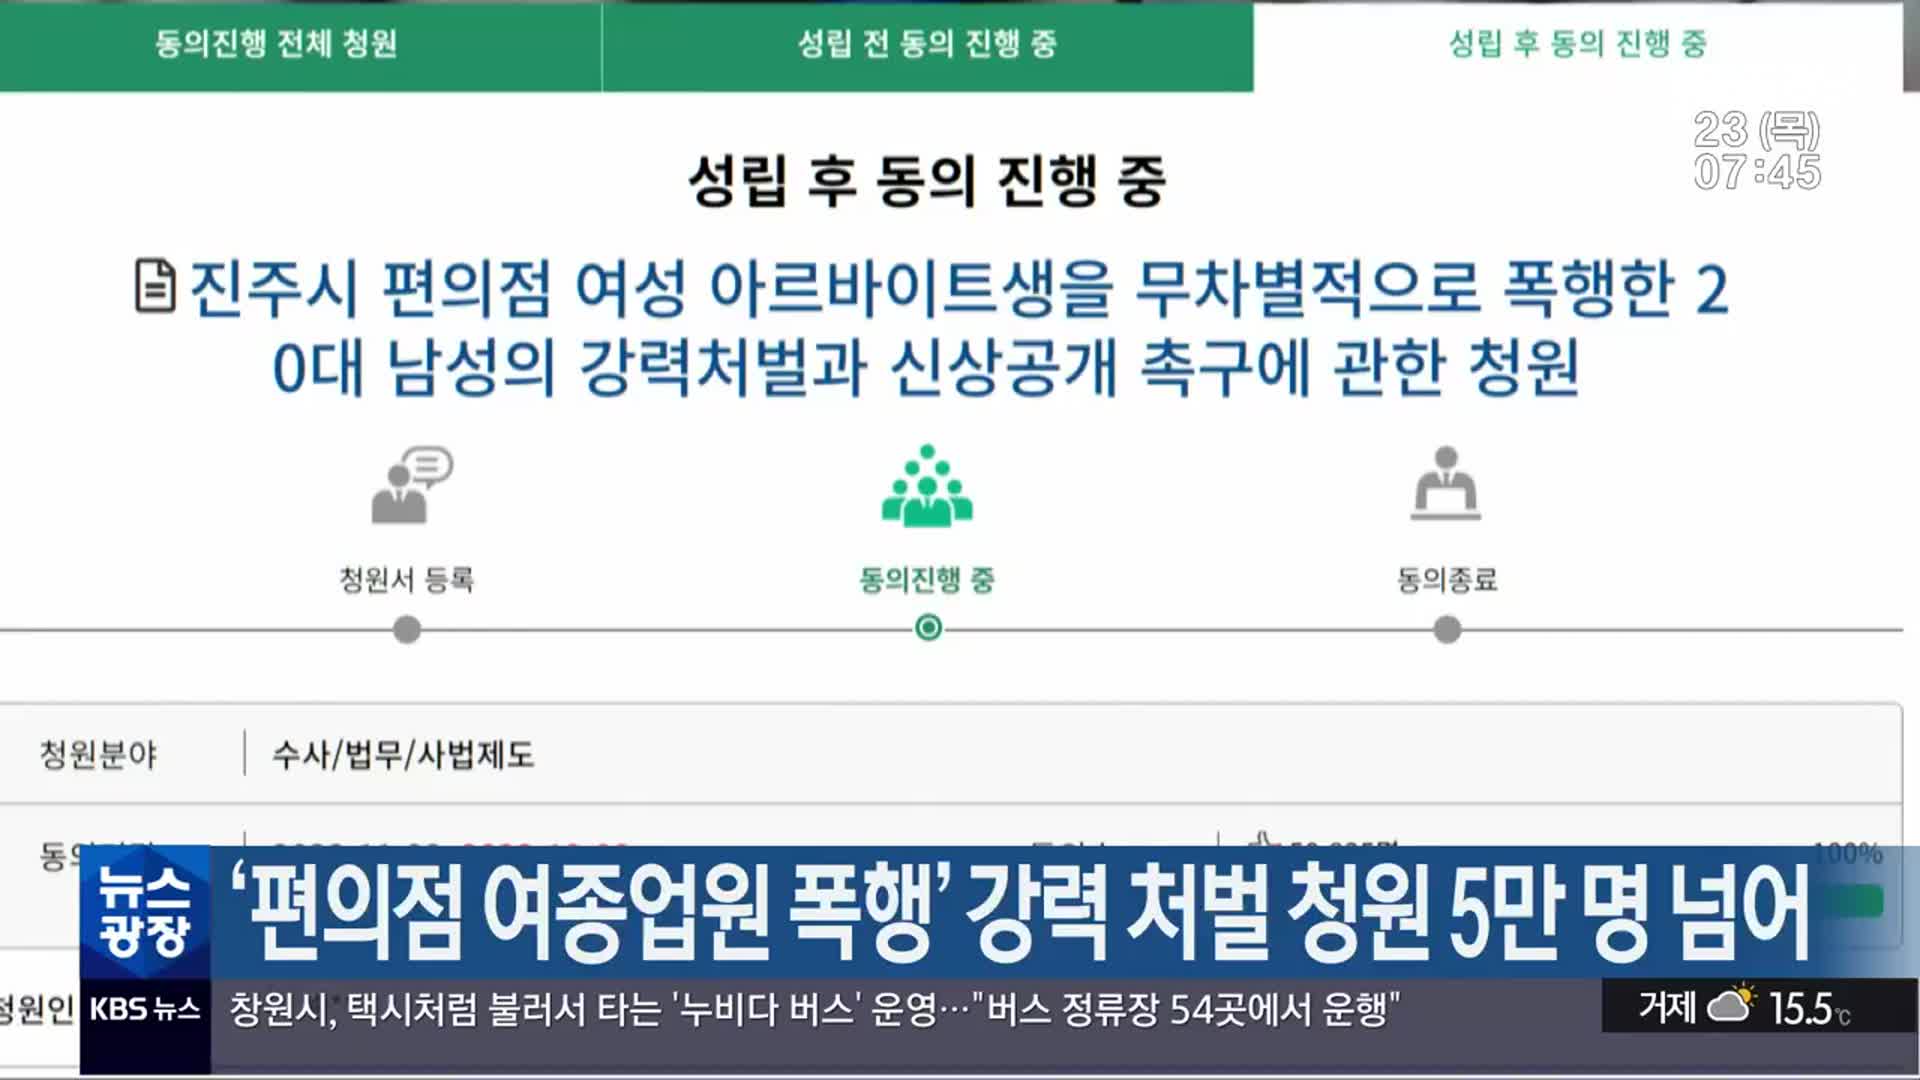 ‘편의점 여종업원 폭행’ 강력 처벌 청원 5만 명 넘어